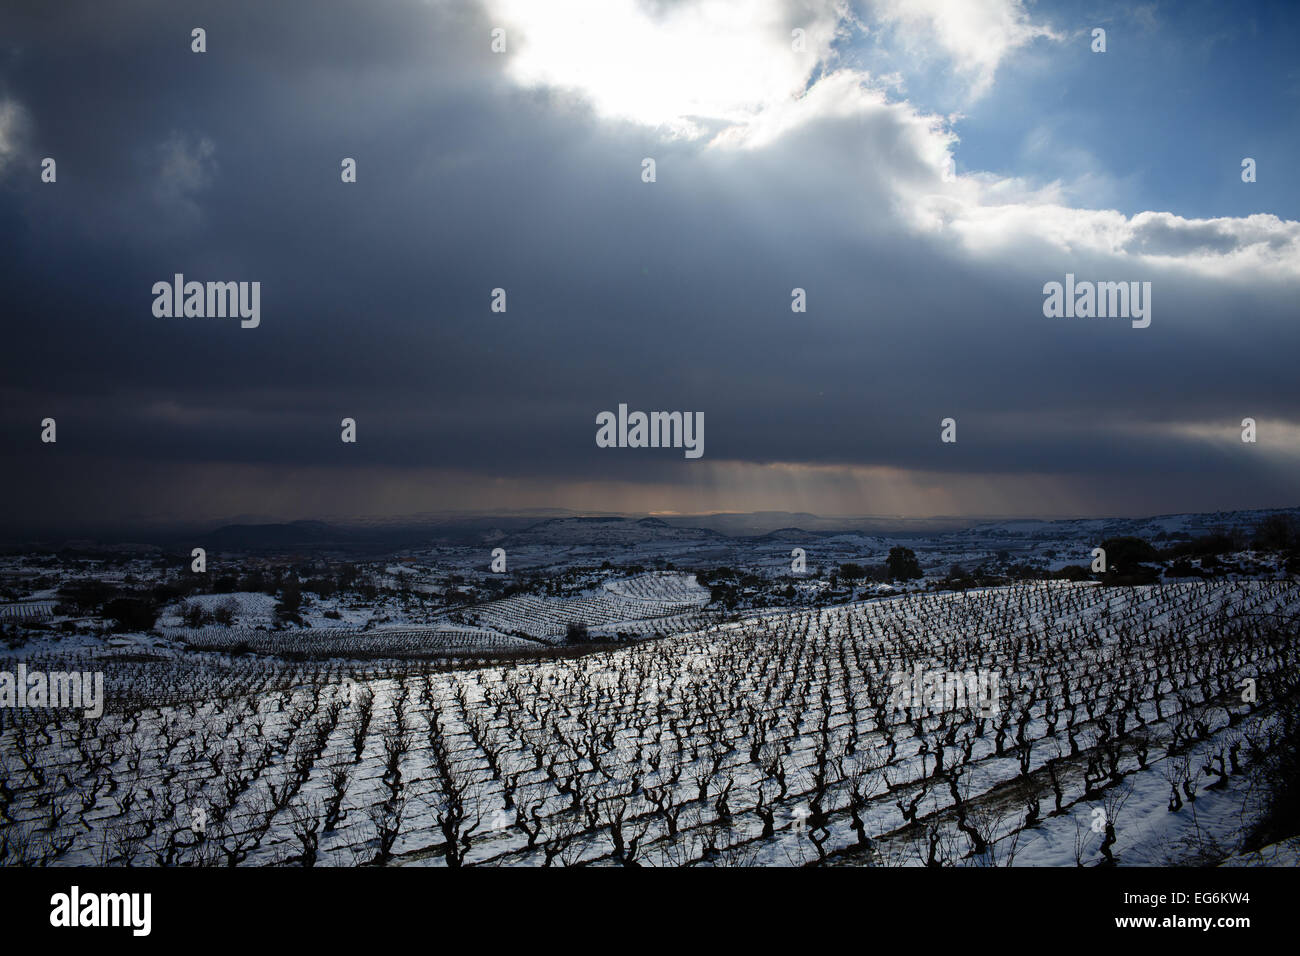 02.08.15 Schnee bedeckten Rioja Weinberge in der Nähe von Samaniego, Alava, Baskisches Land, Spanien. Foto von James Sturcke. Stockfoto